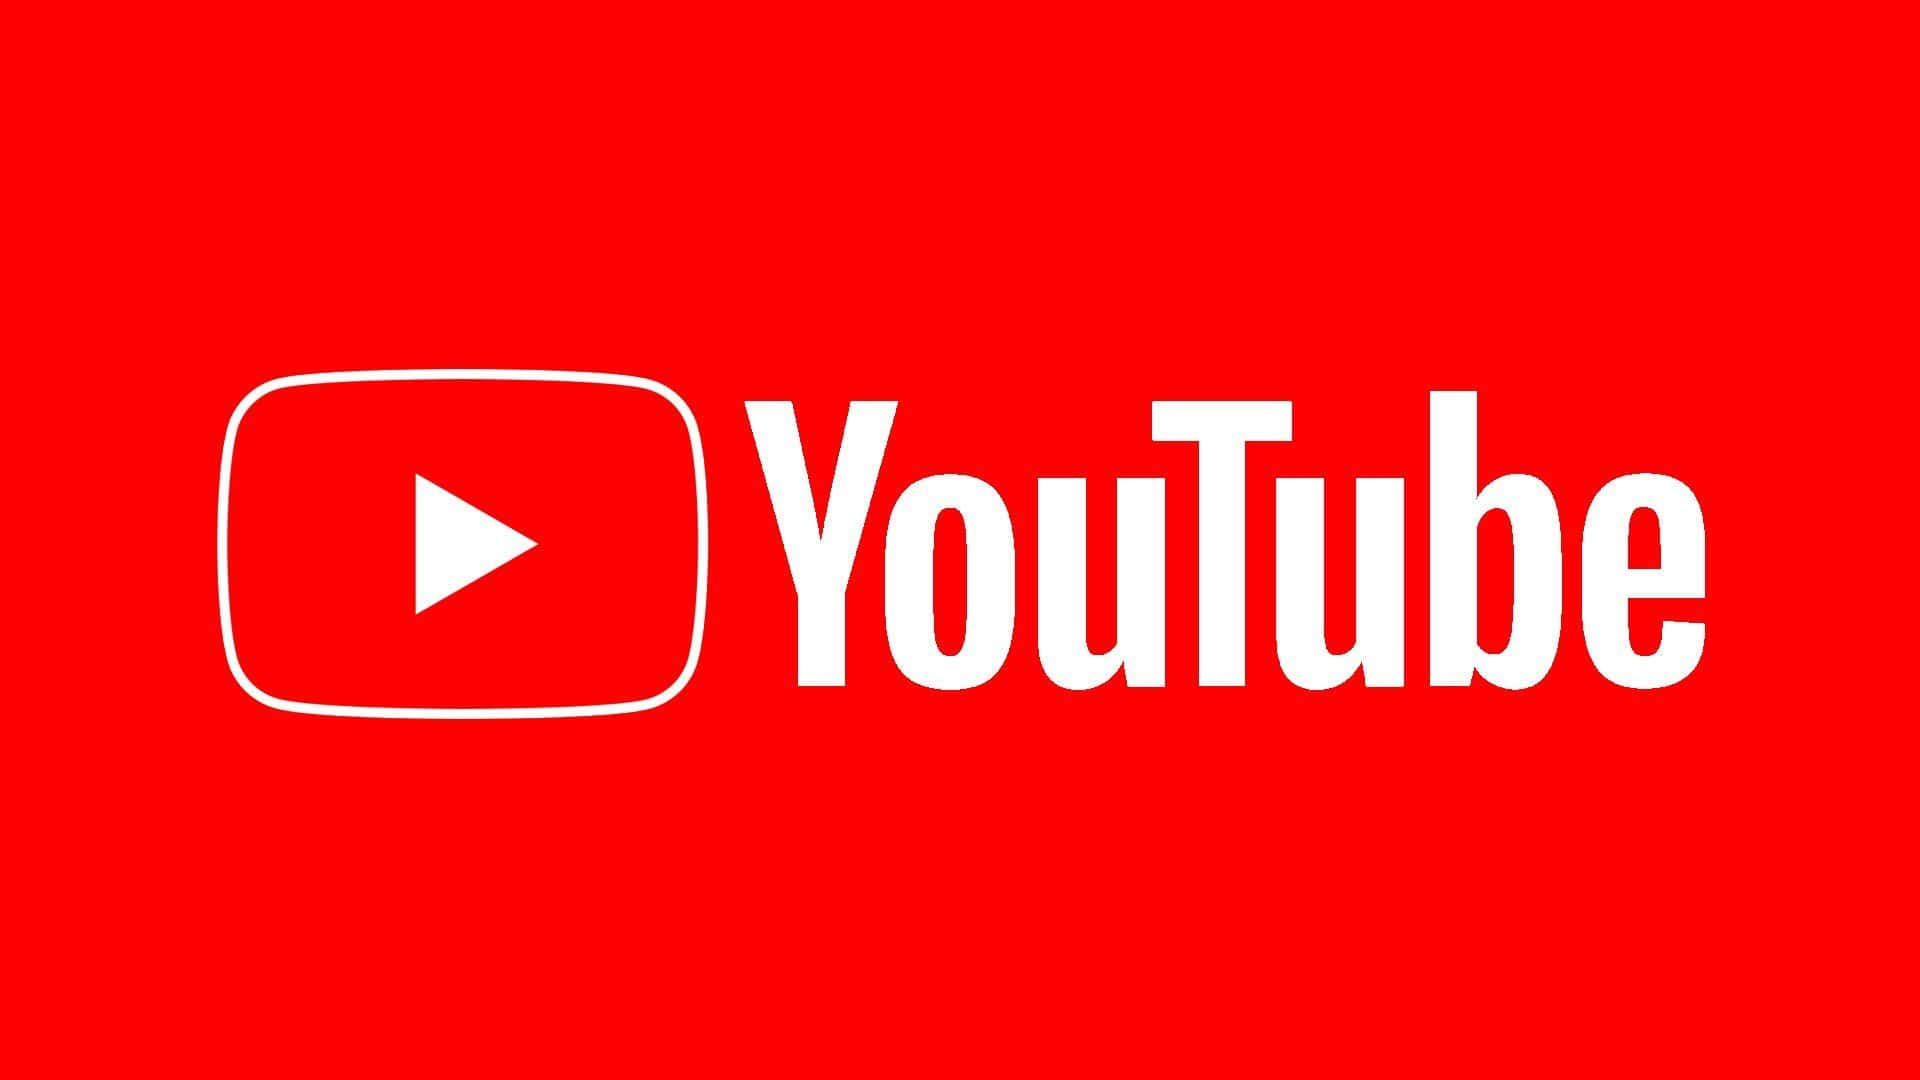 YouTube finaliza las recomendaciones de vídeos para algunos